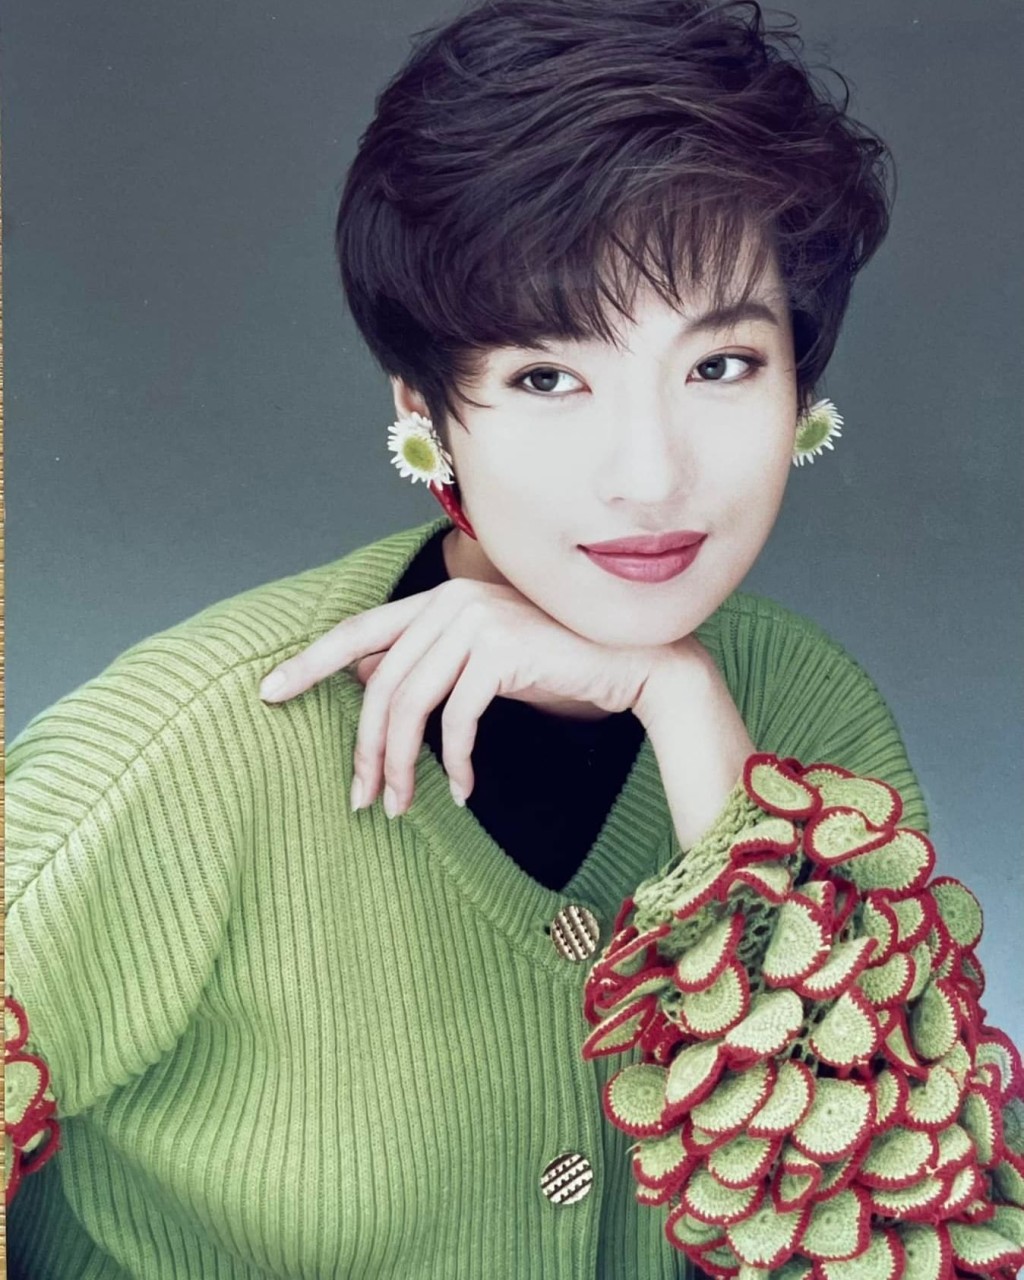 溫翠蘋在1989年參加環球中國小姐選美並獲得第二名。